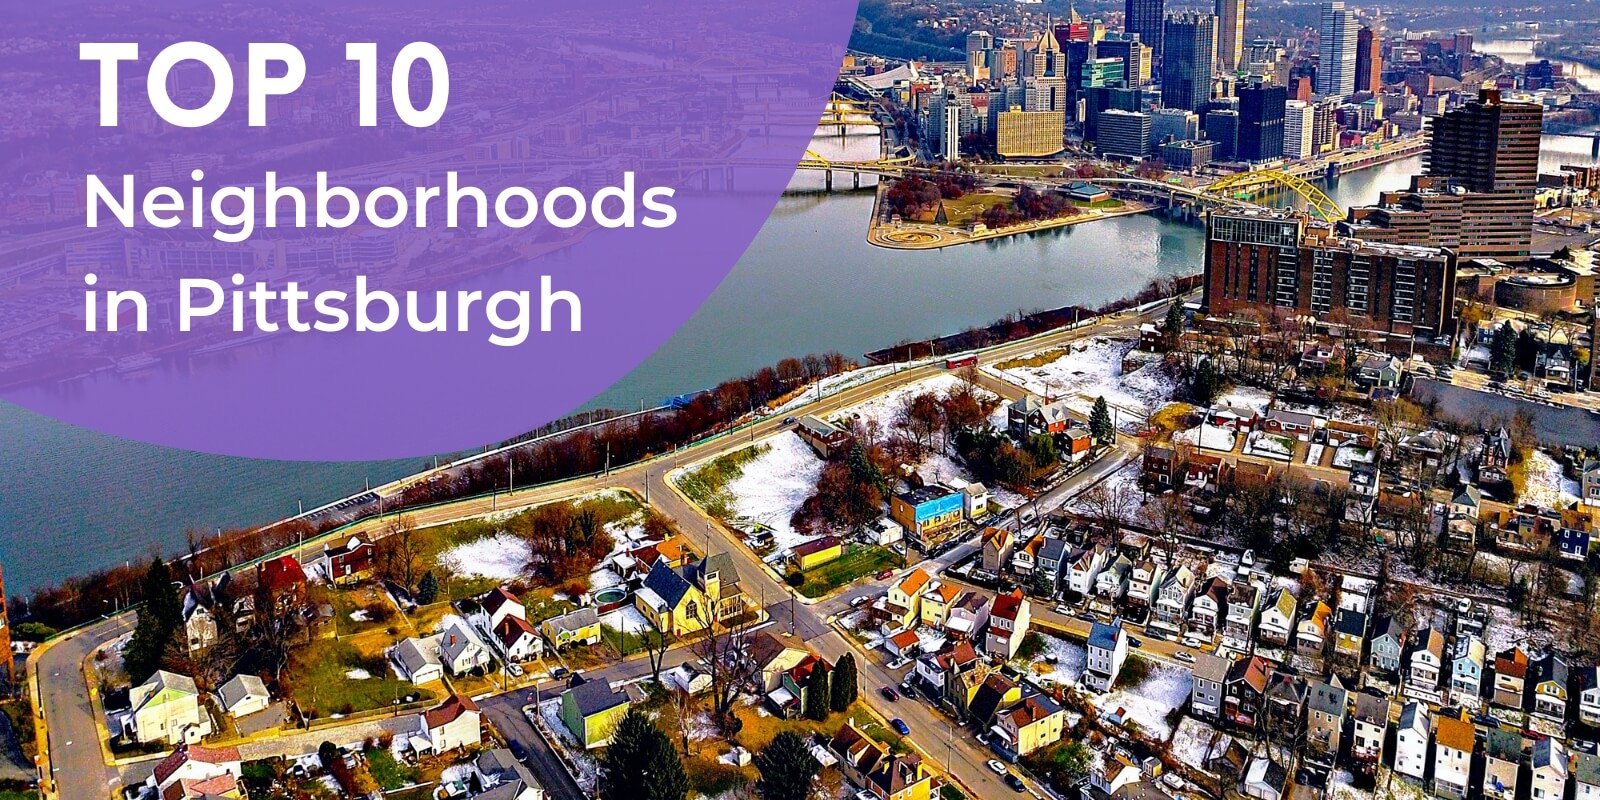 Top 10 Neighborhoods in Pittsburgh